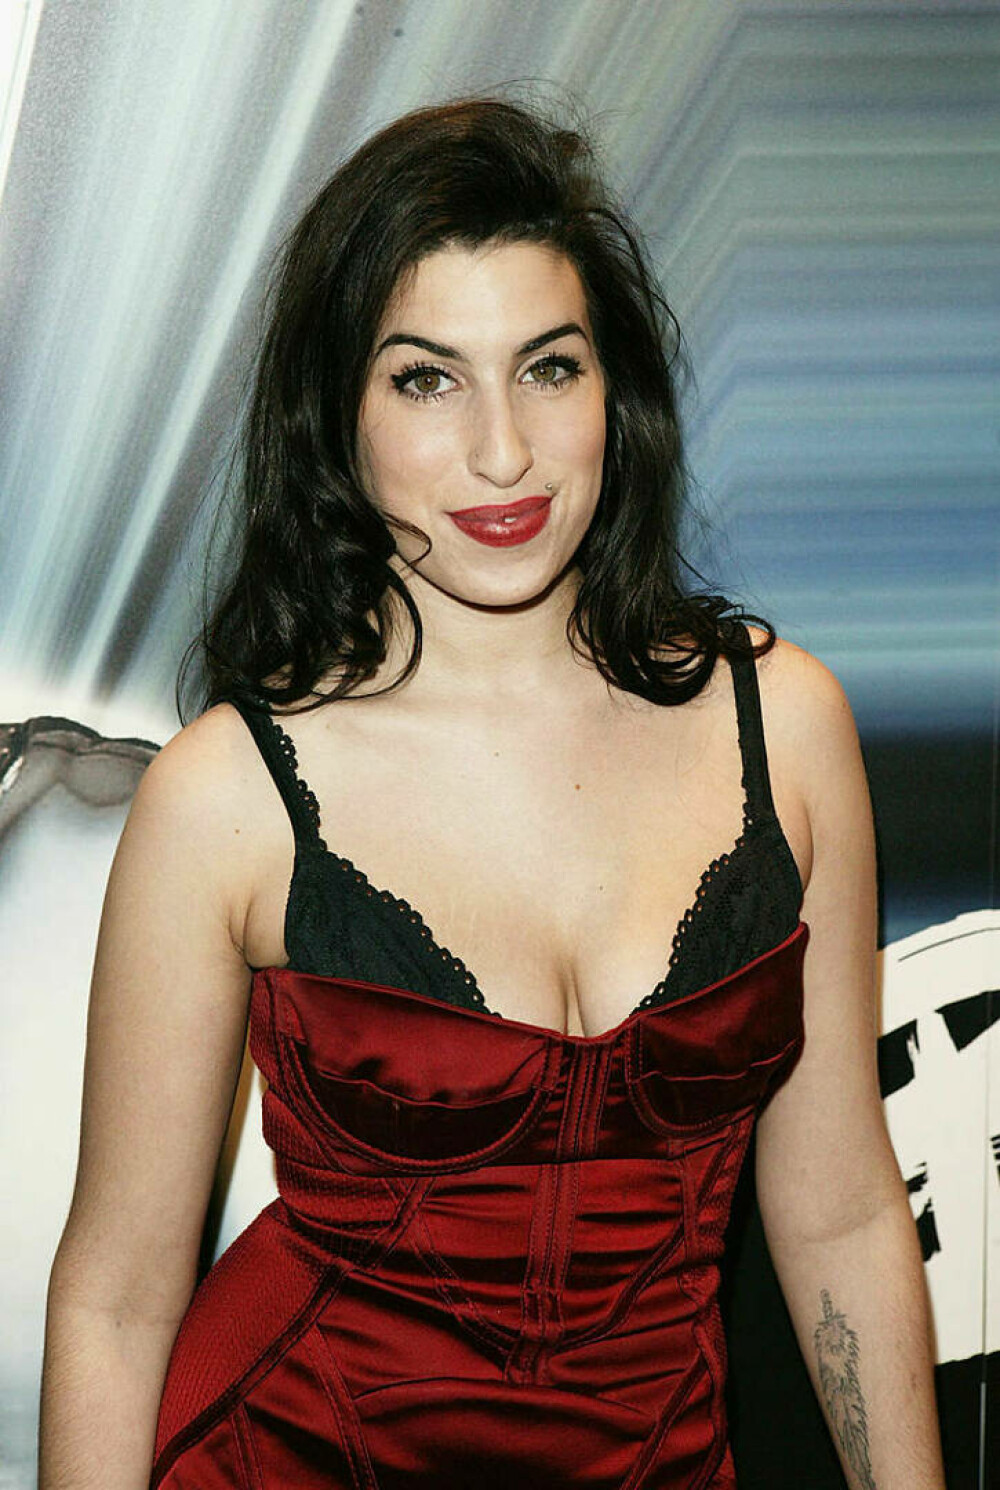 Imagini de colecție cu Amy Winehouse. Cântăreața ar fi împlinit astăzi 40 de ani | FOTO - Imaginea 5